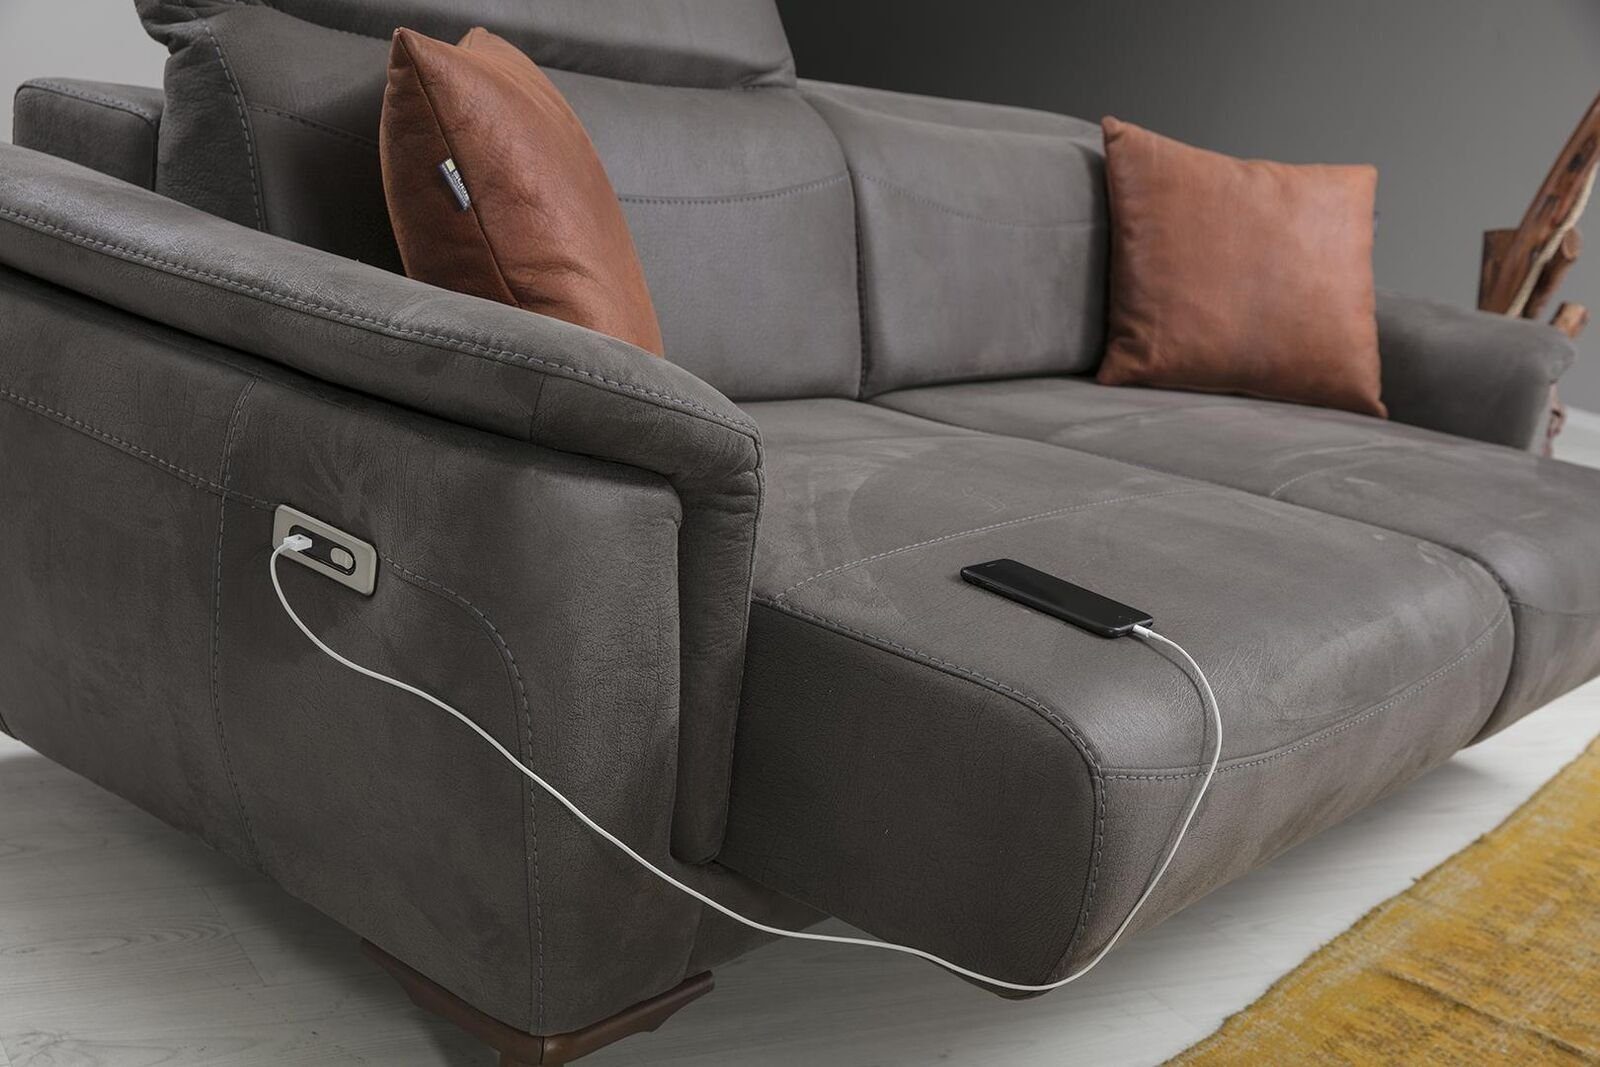 Sofa Teile, 1 Made Polstermöbel, Luxus Europa in Modern Couch Wohnzimmer 3-Sitzer Sitzmöbel JVmoebel